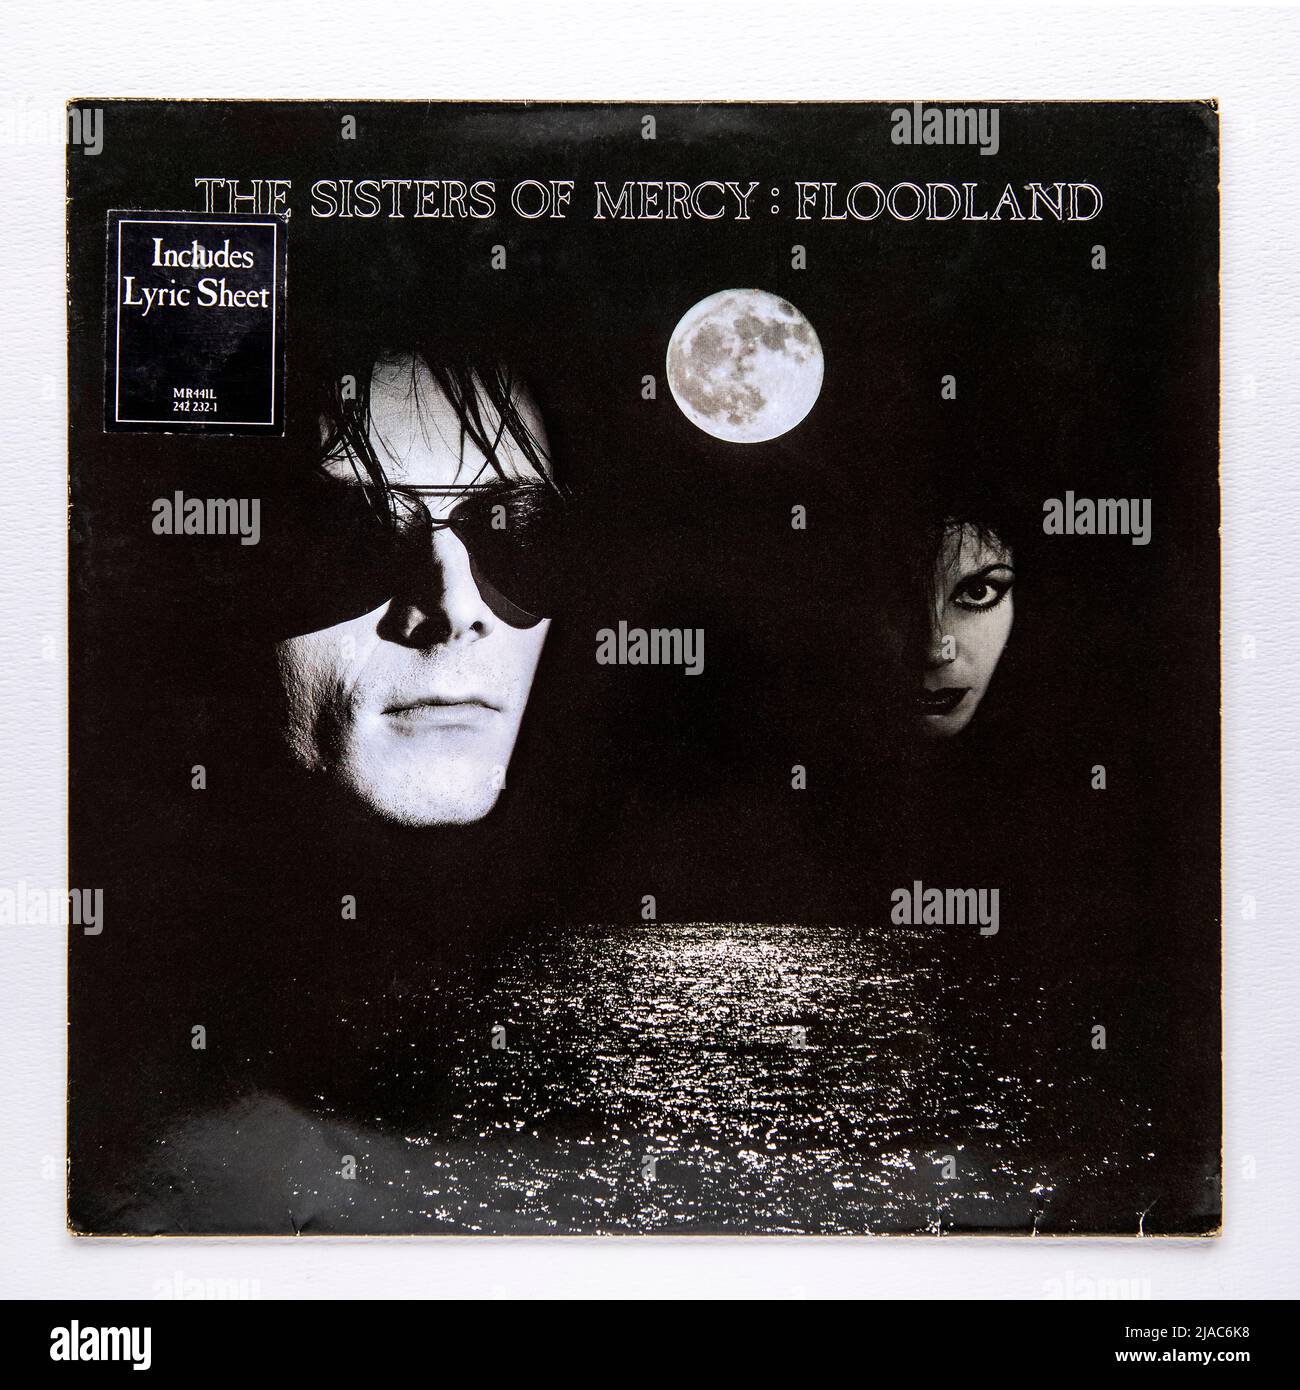 Copertina LP di Floodland, il secondo album in studio della gotica rock band inglese The Sisters of Mercy, pubblicato nel 1987 Foto Stock